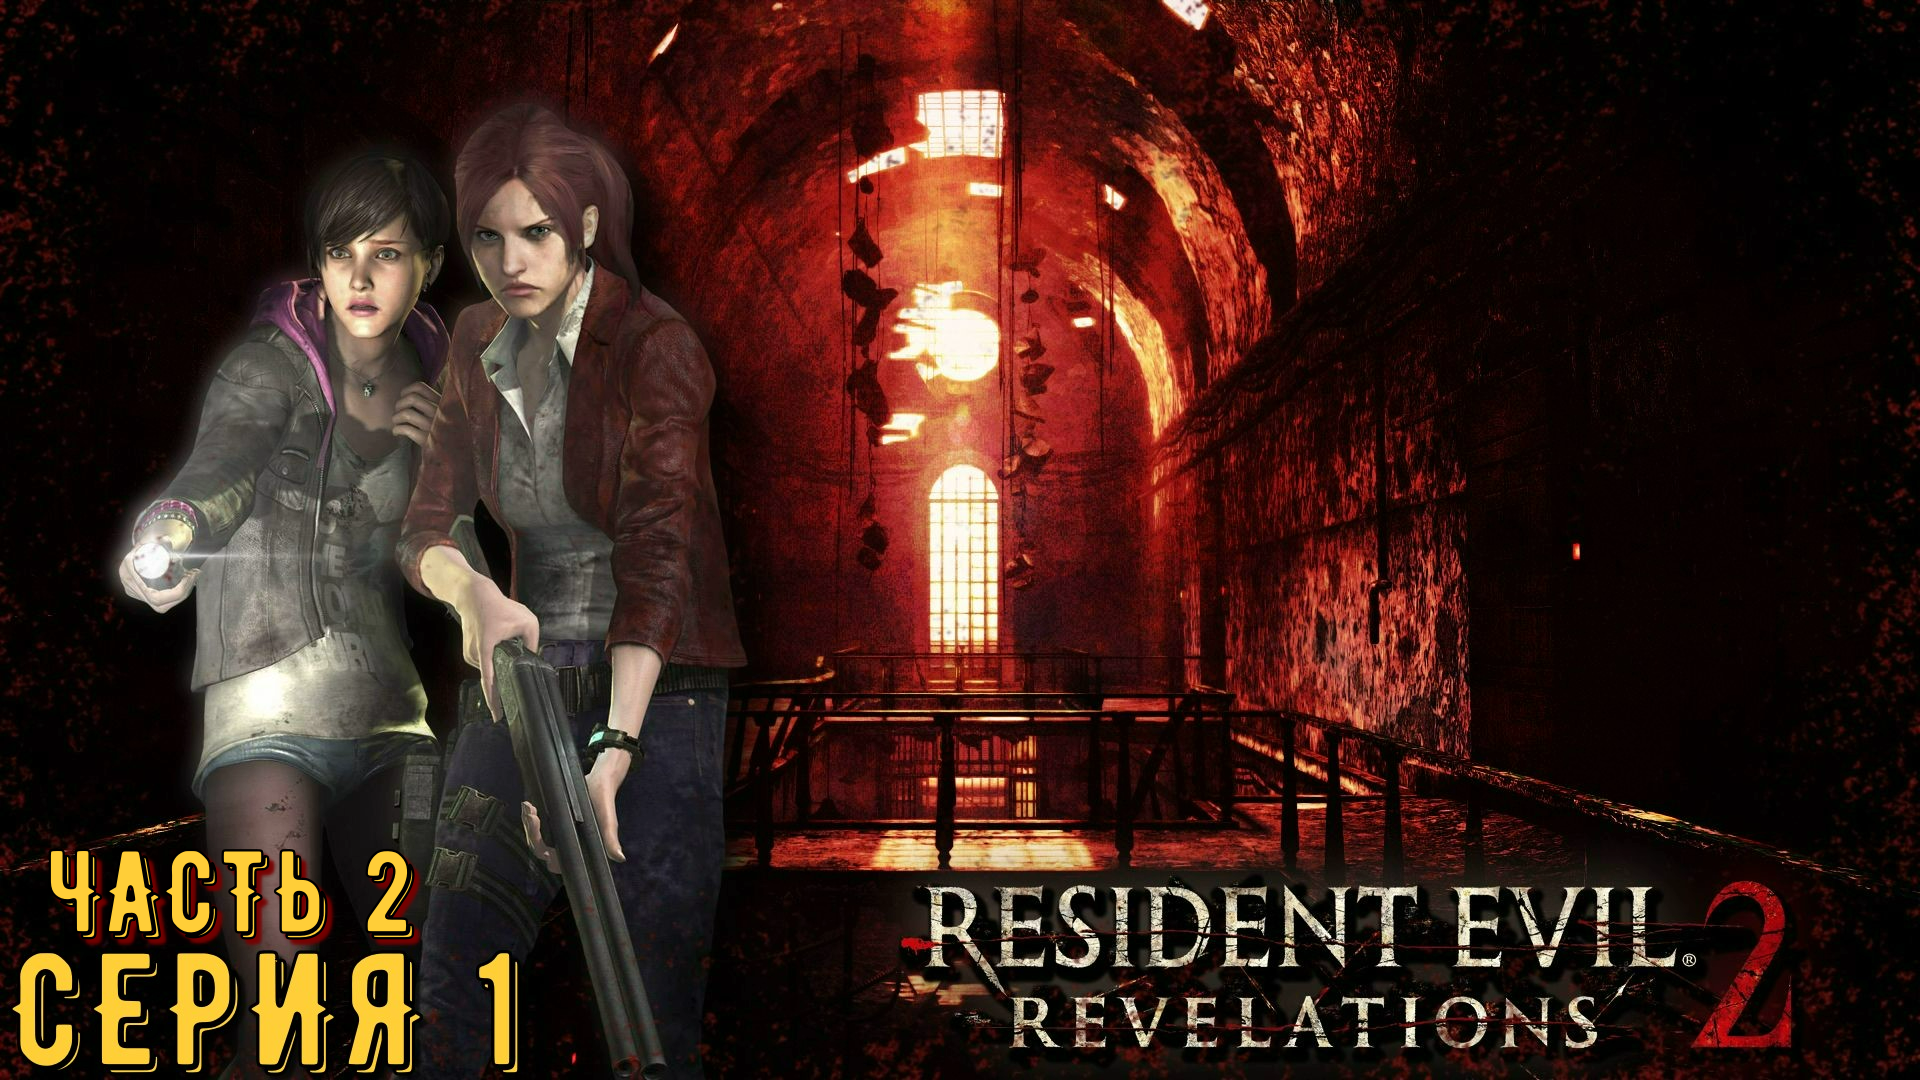 Resident Evil Revelations 2 / Biohazard Revelations 2 ► Серия 1 Часть 2 ◄ | Запись стрима